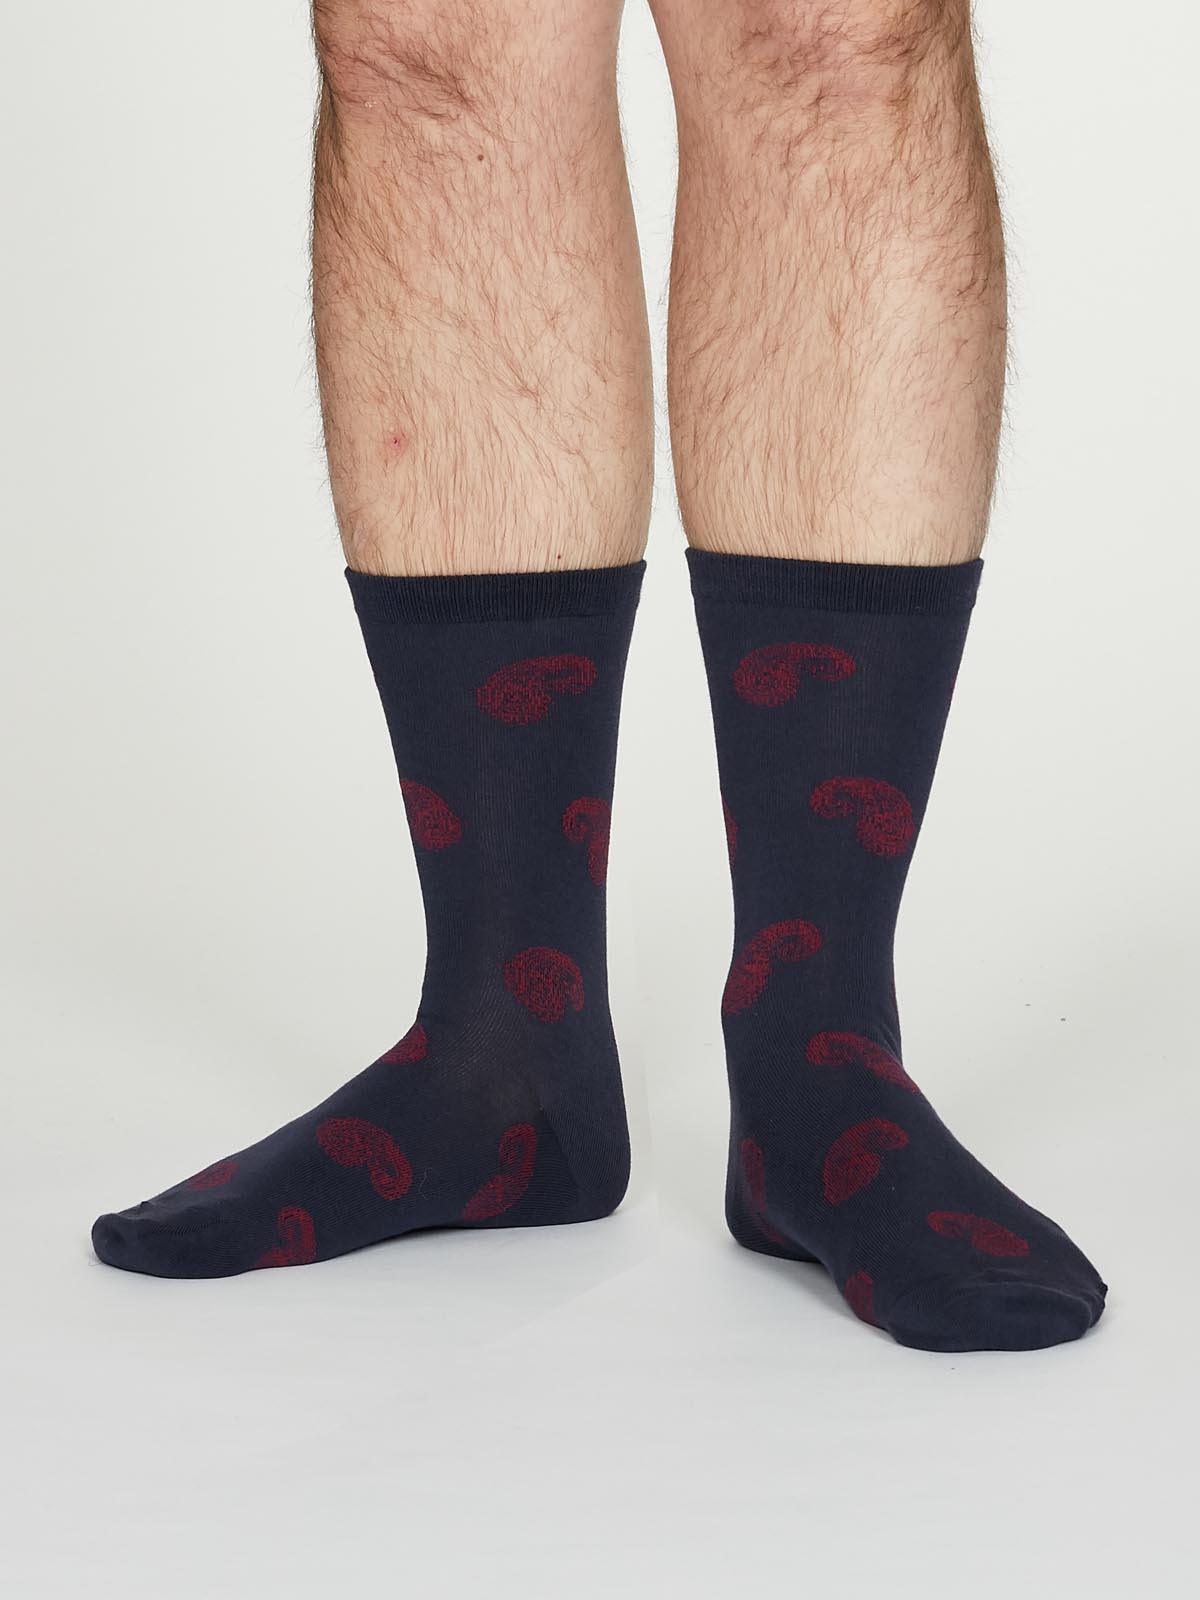 Homer Socks - Indigo - Thought Clothing UK